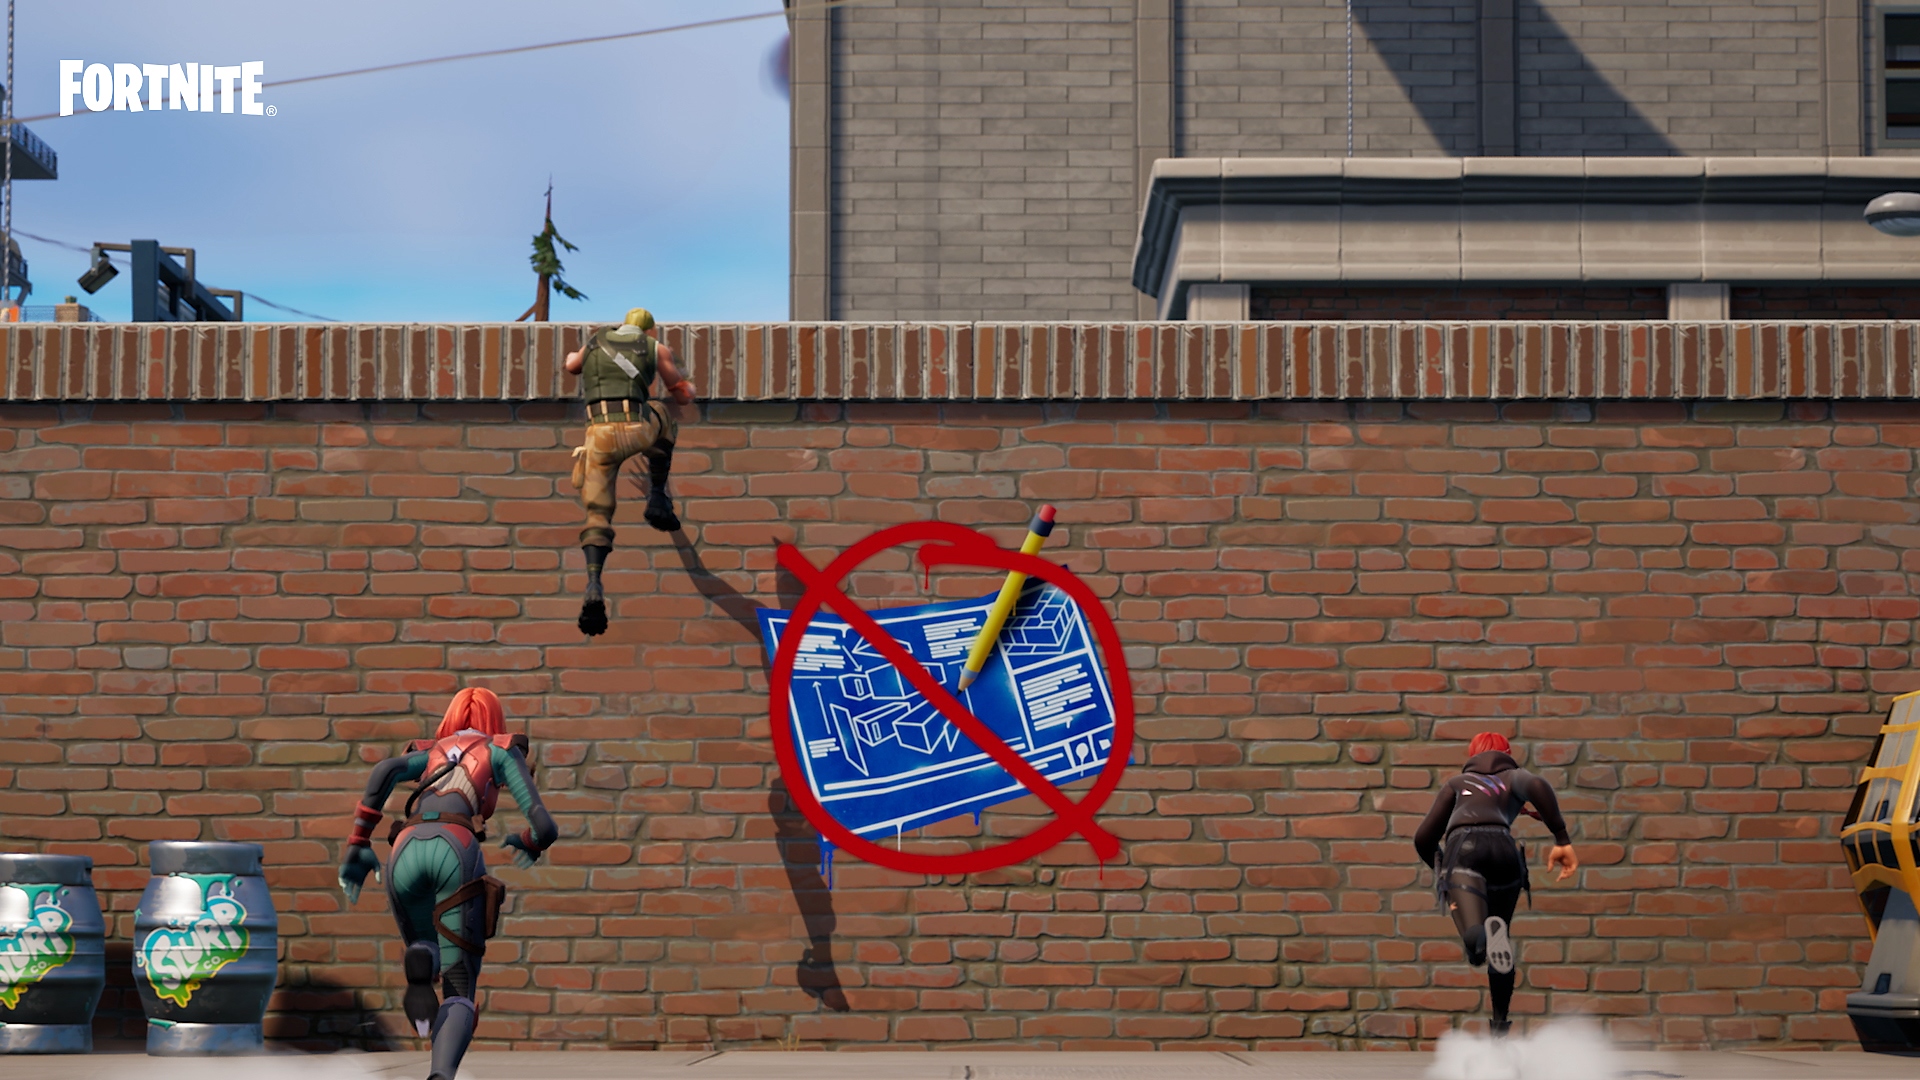 Modo cero construcción de Fortnite - personajes trepando por un muro